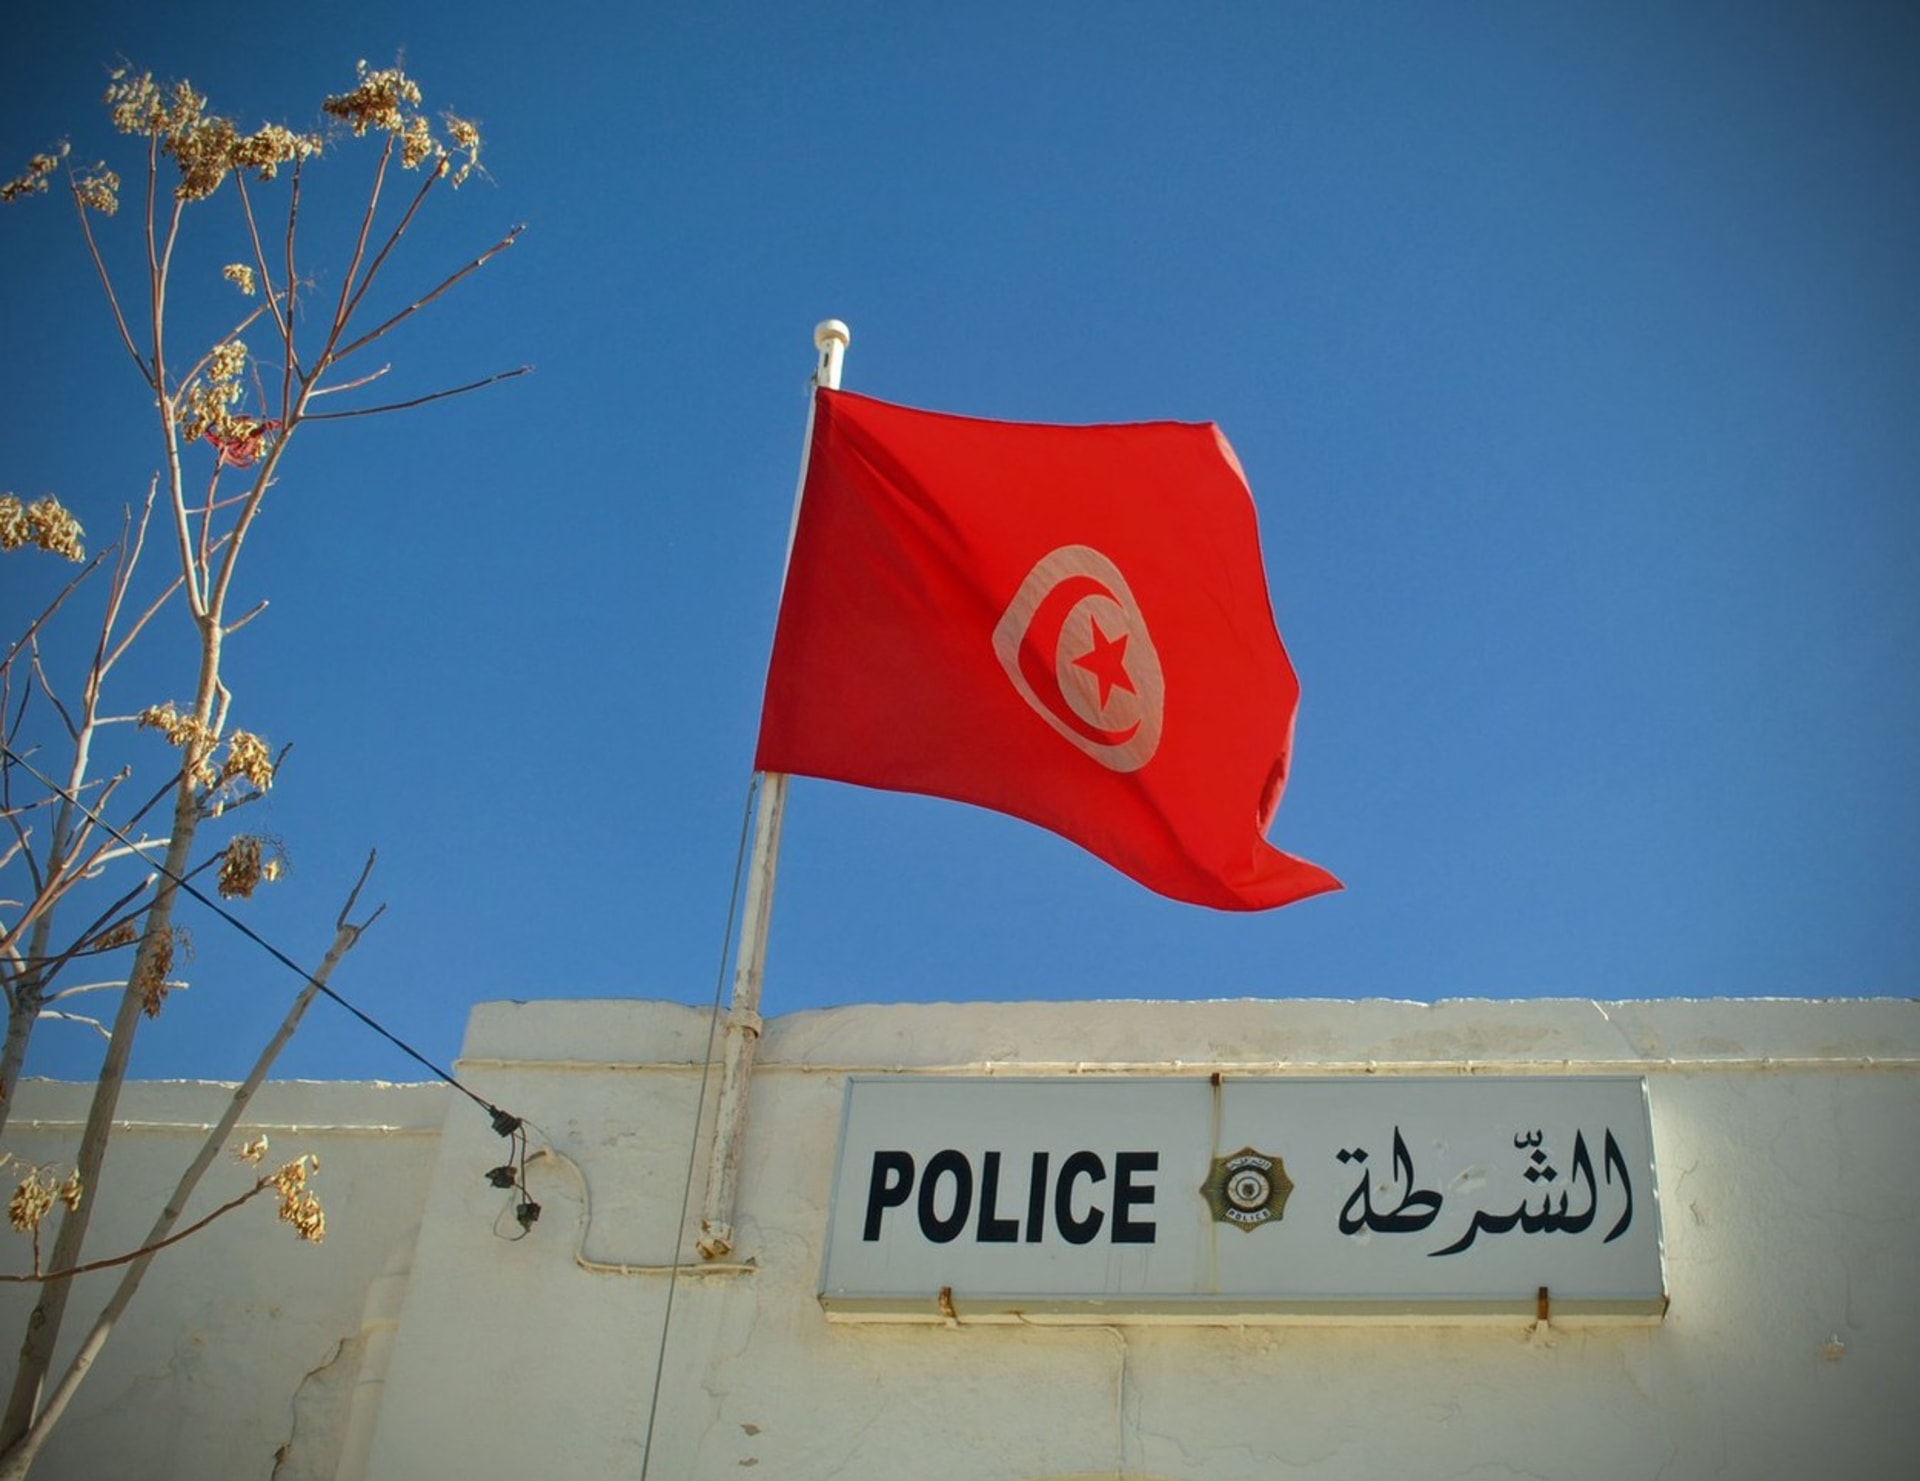 Žena, která v Tunisku zavraždila manžela, zřejmě stráví vánoční svátky v tamním vězení (ilustrační foto).